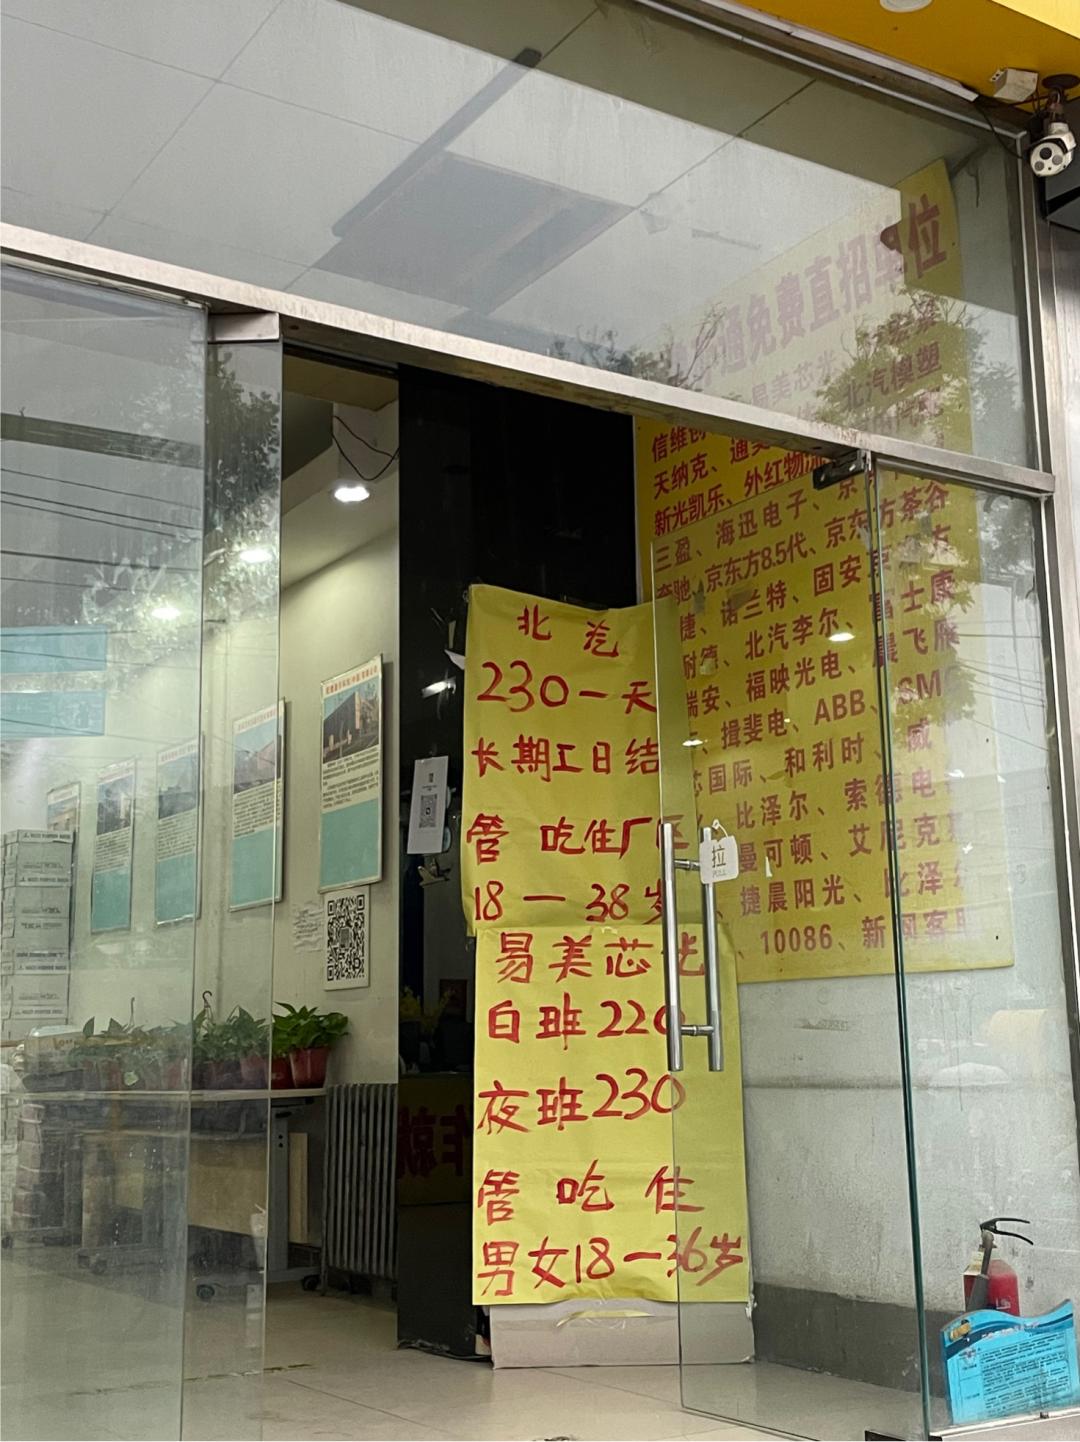 北京市胜利玉林烤鸭店有限责任公司 | 玉林烤鸭店 | 胜利玉林烤鸭店